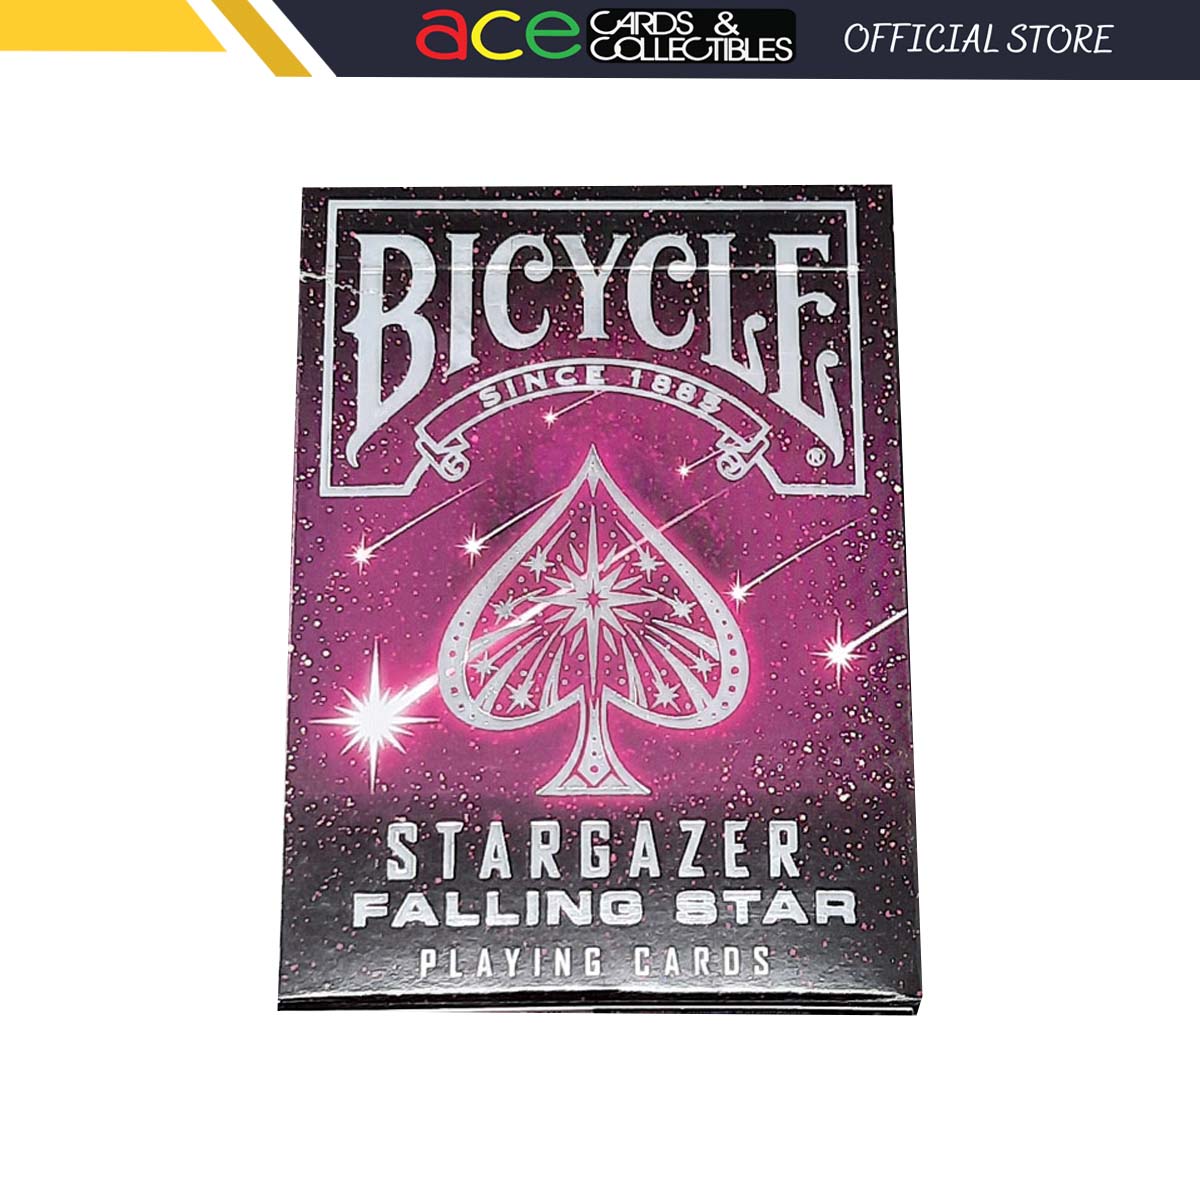 Bicycle Stargazer Falling Star Playing Cards-United States Playing Cards Company-Ace Cards & Collectibles